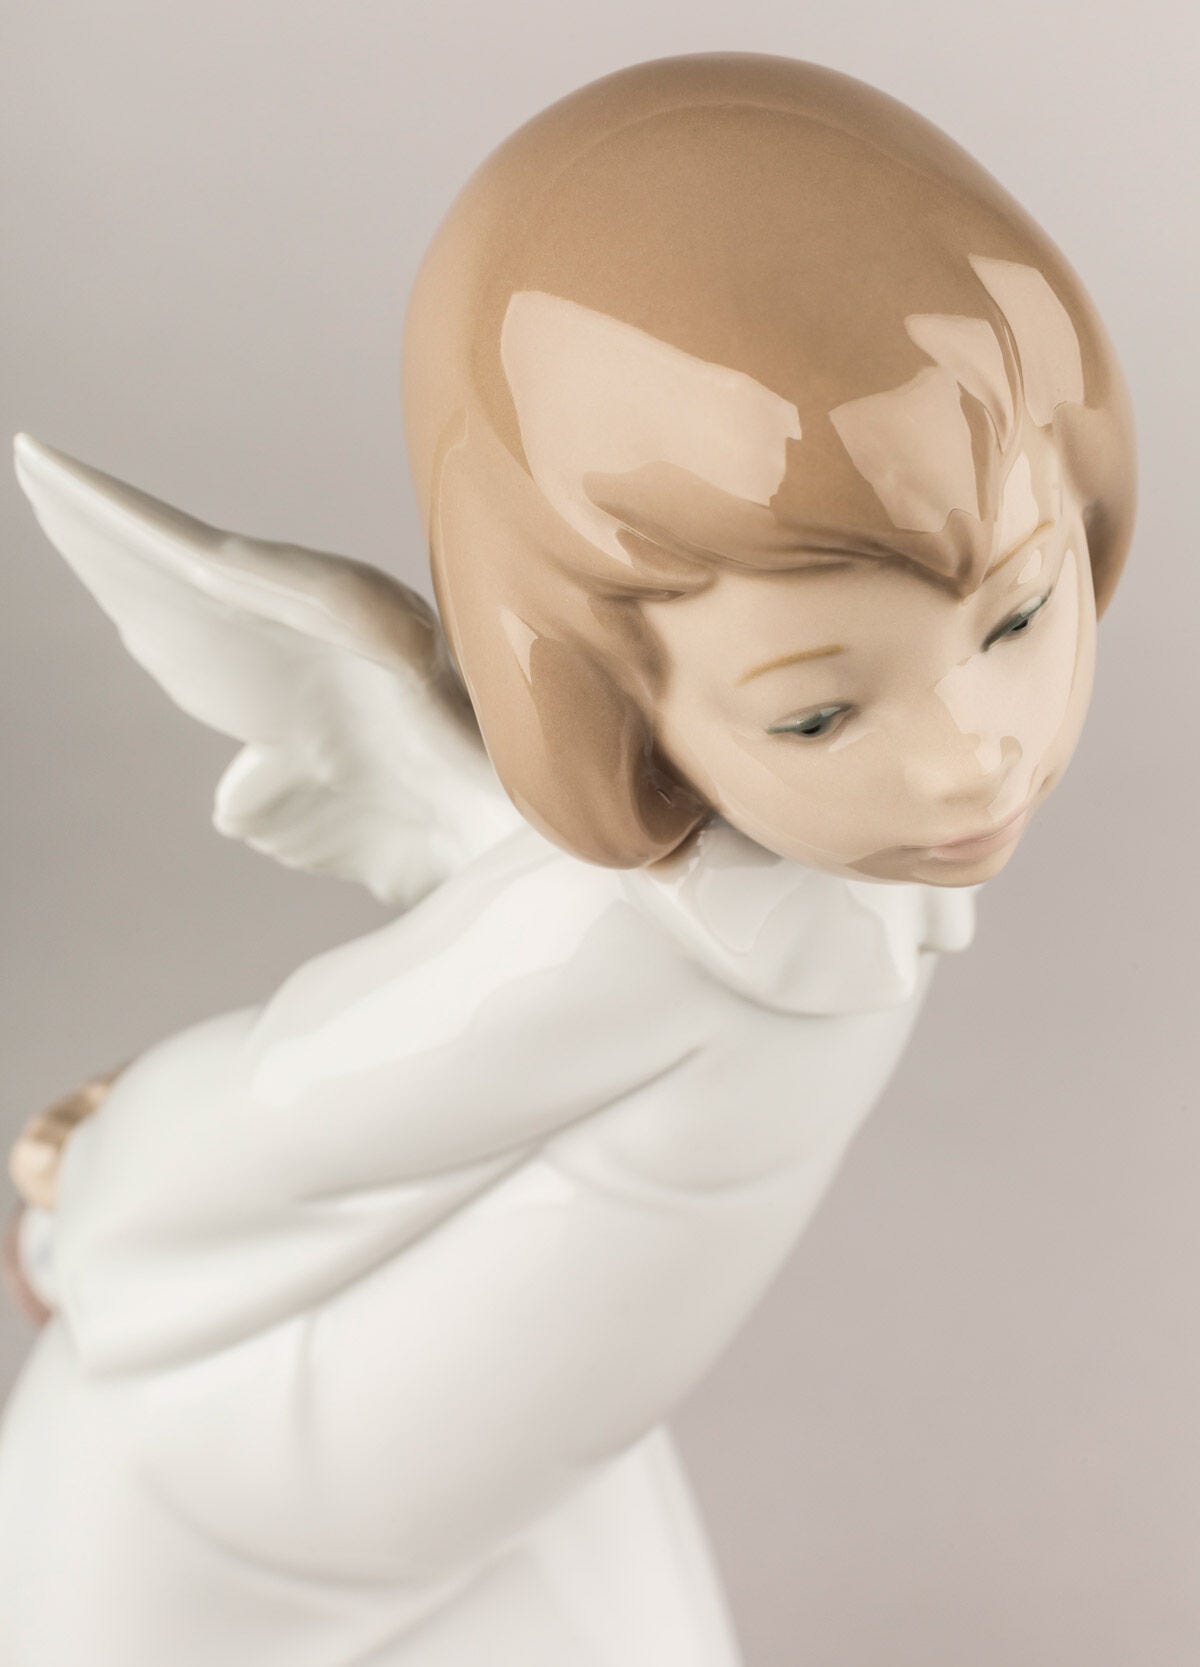 【即納HOT】Lladro リヤドロ 天使の考えごと わかってきたぞ 少女 天使像 リヤドロ